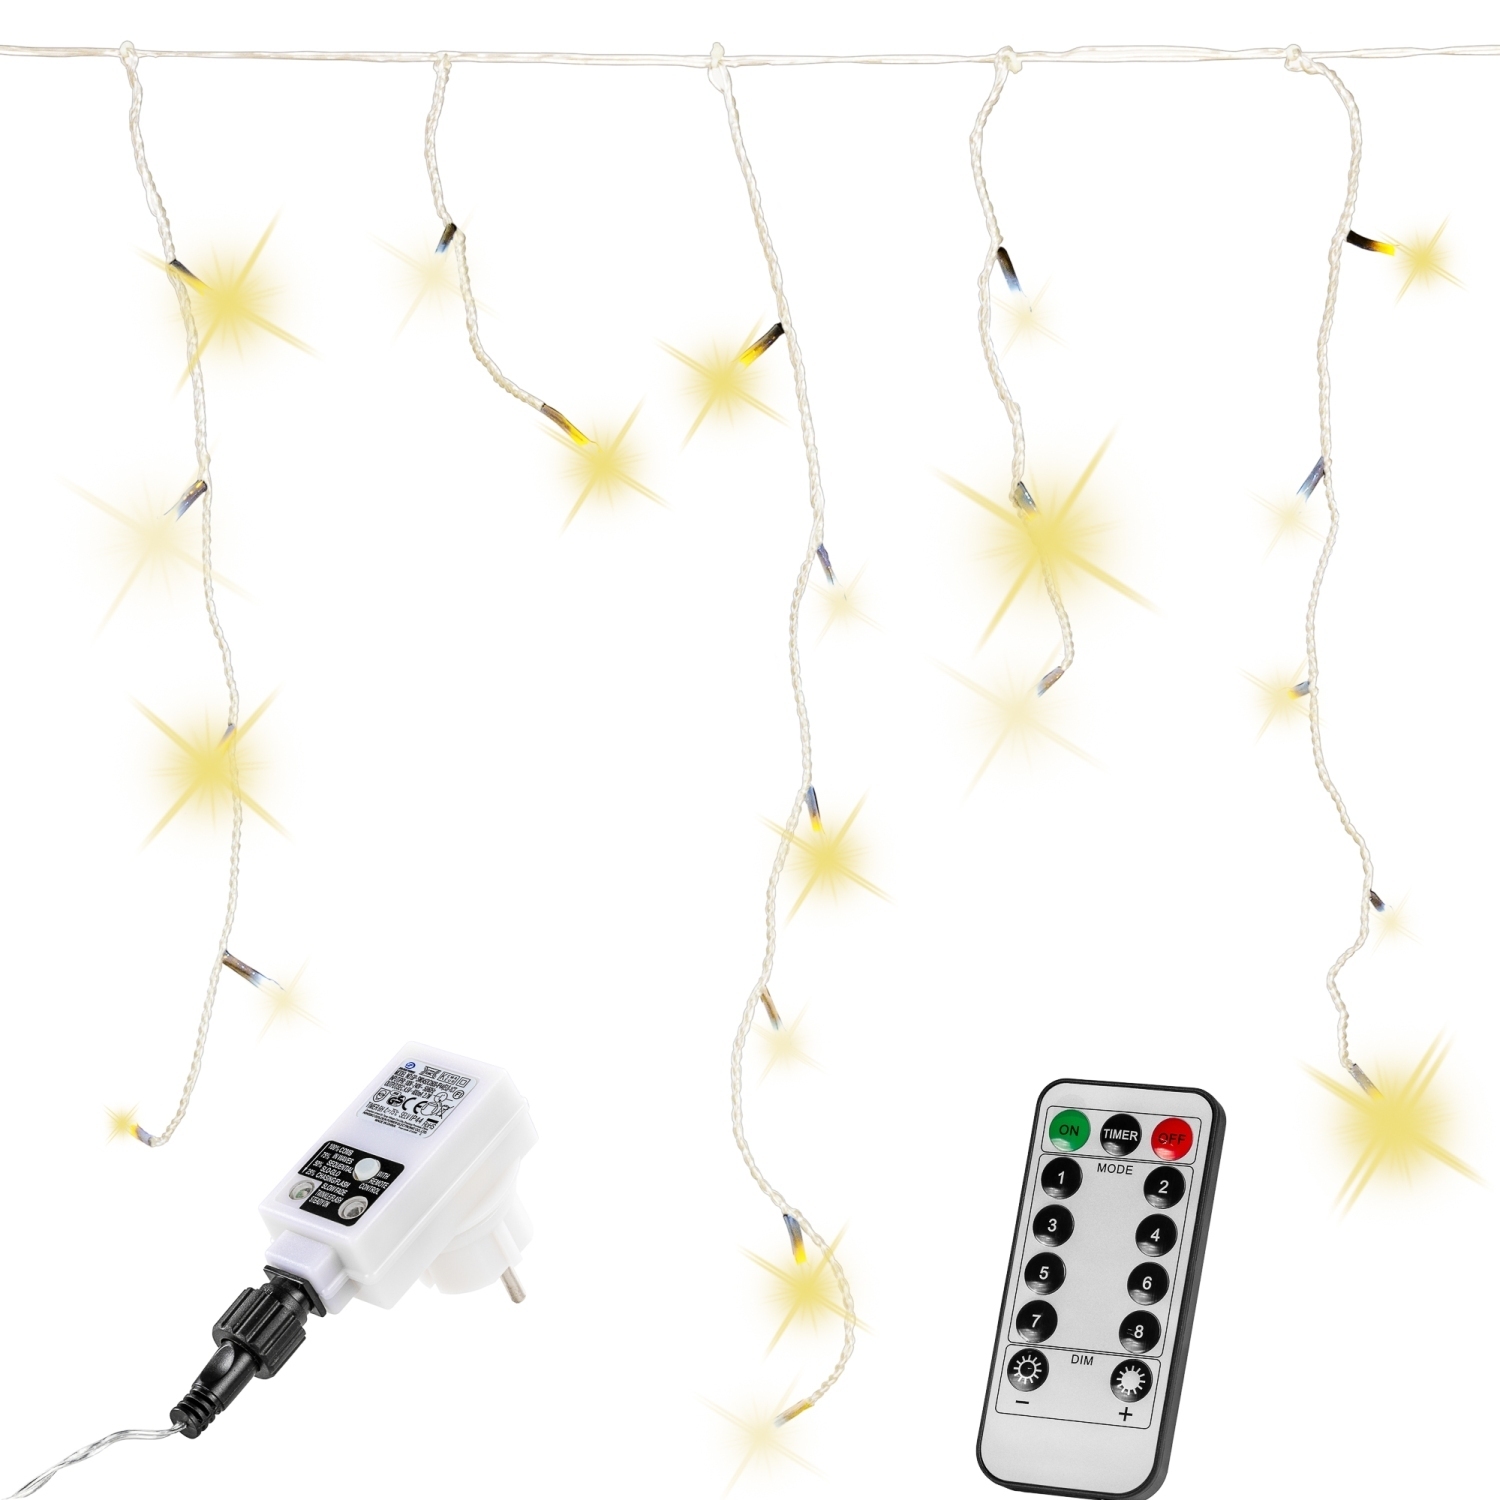 Lichtgordijn – Ijspegelverlichting – Voor Binnen en Buiten – Met afstandsbediening – 40 m – Warm wit